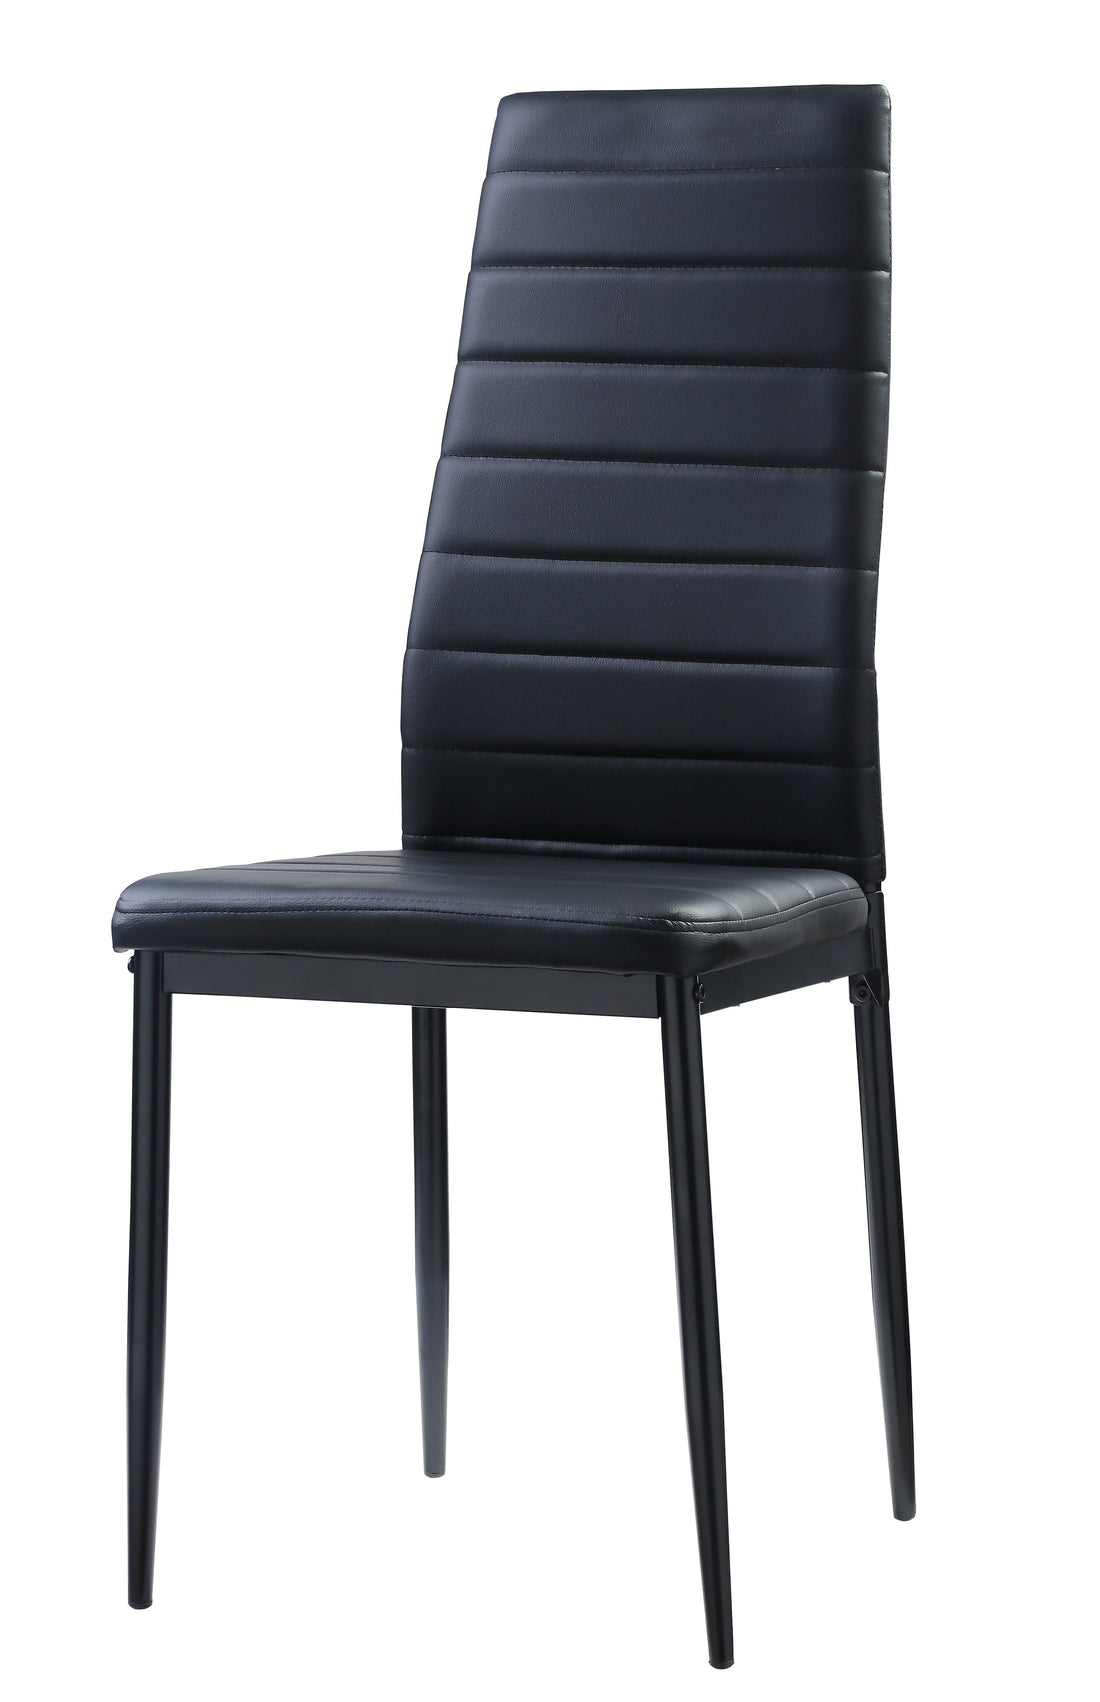 Florian Black Side Chair, Set of 2 - 5538BKS - Bien Home Furniture &amp; Electronics